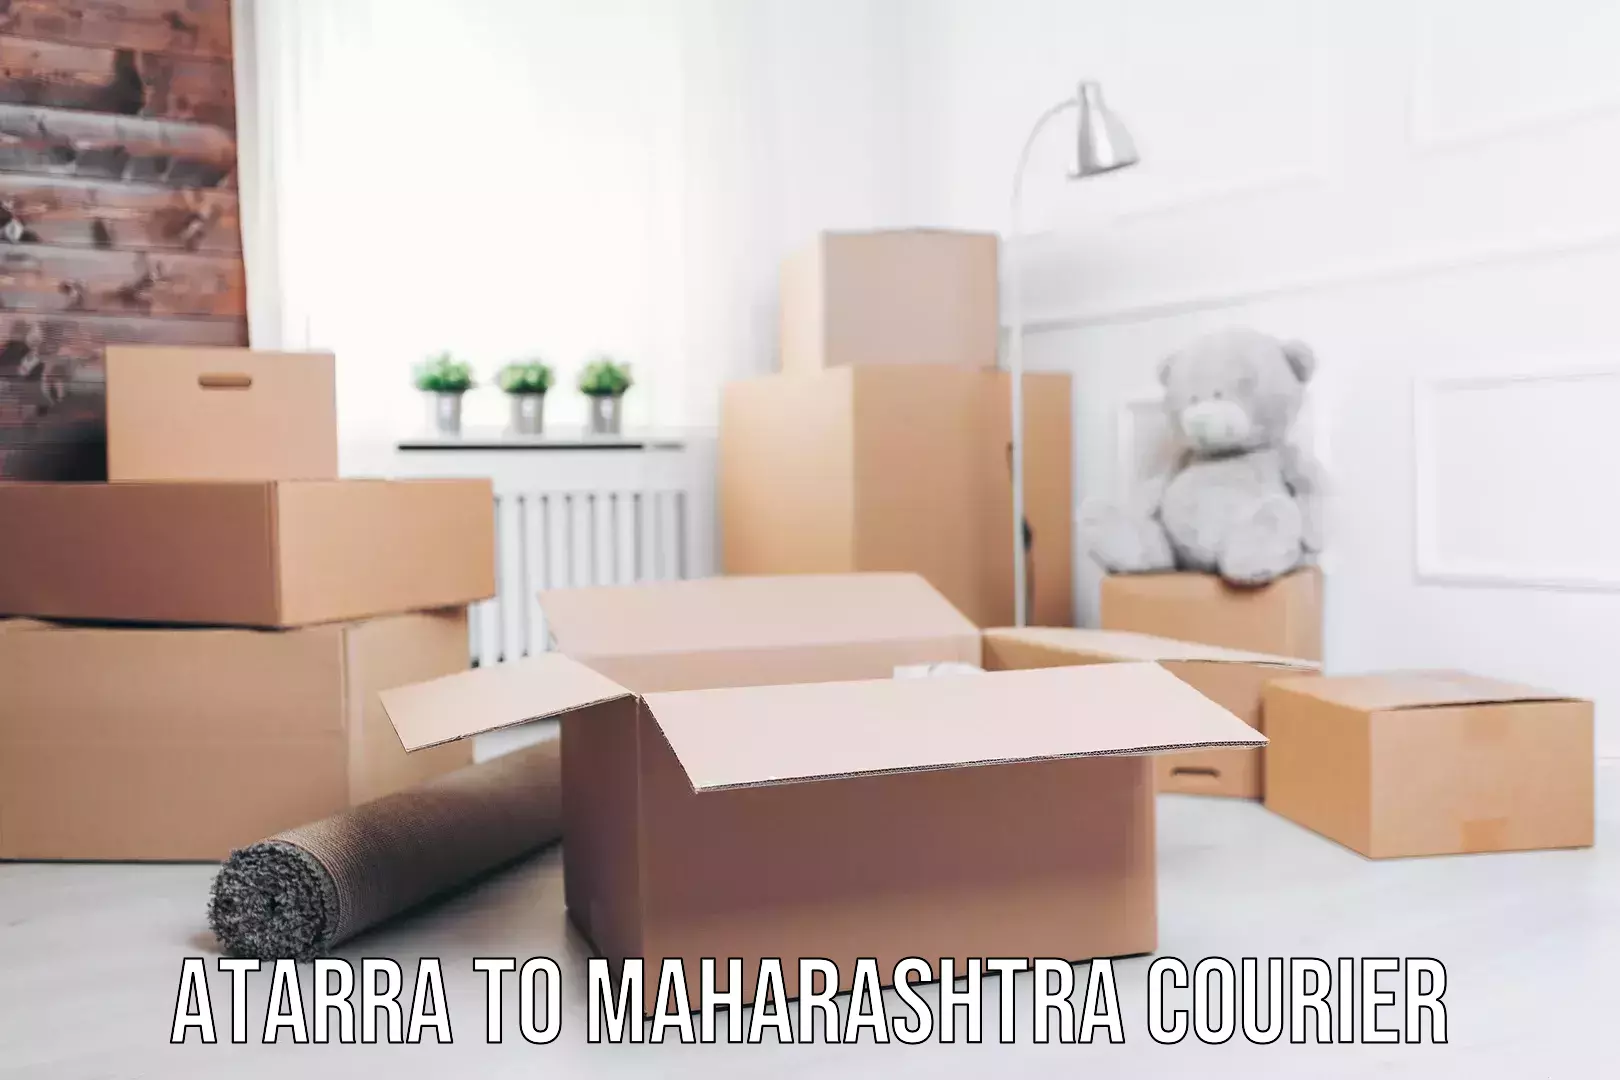 Express logistics providers Atarra to Maharashtra